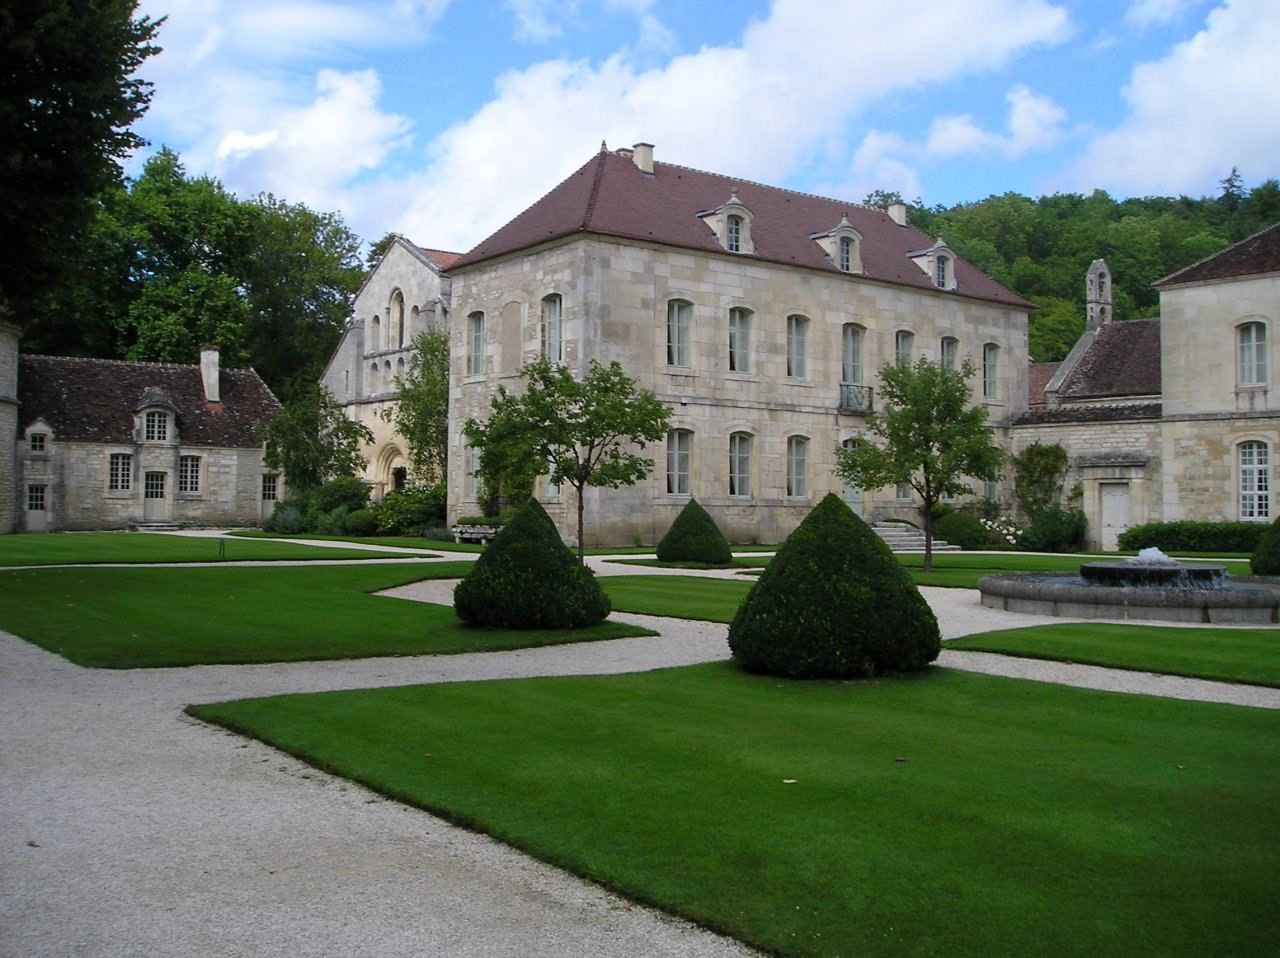 Edifices abbaye de fontenay-bourgogne